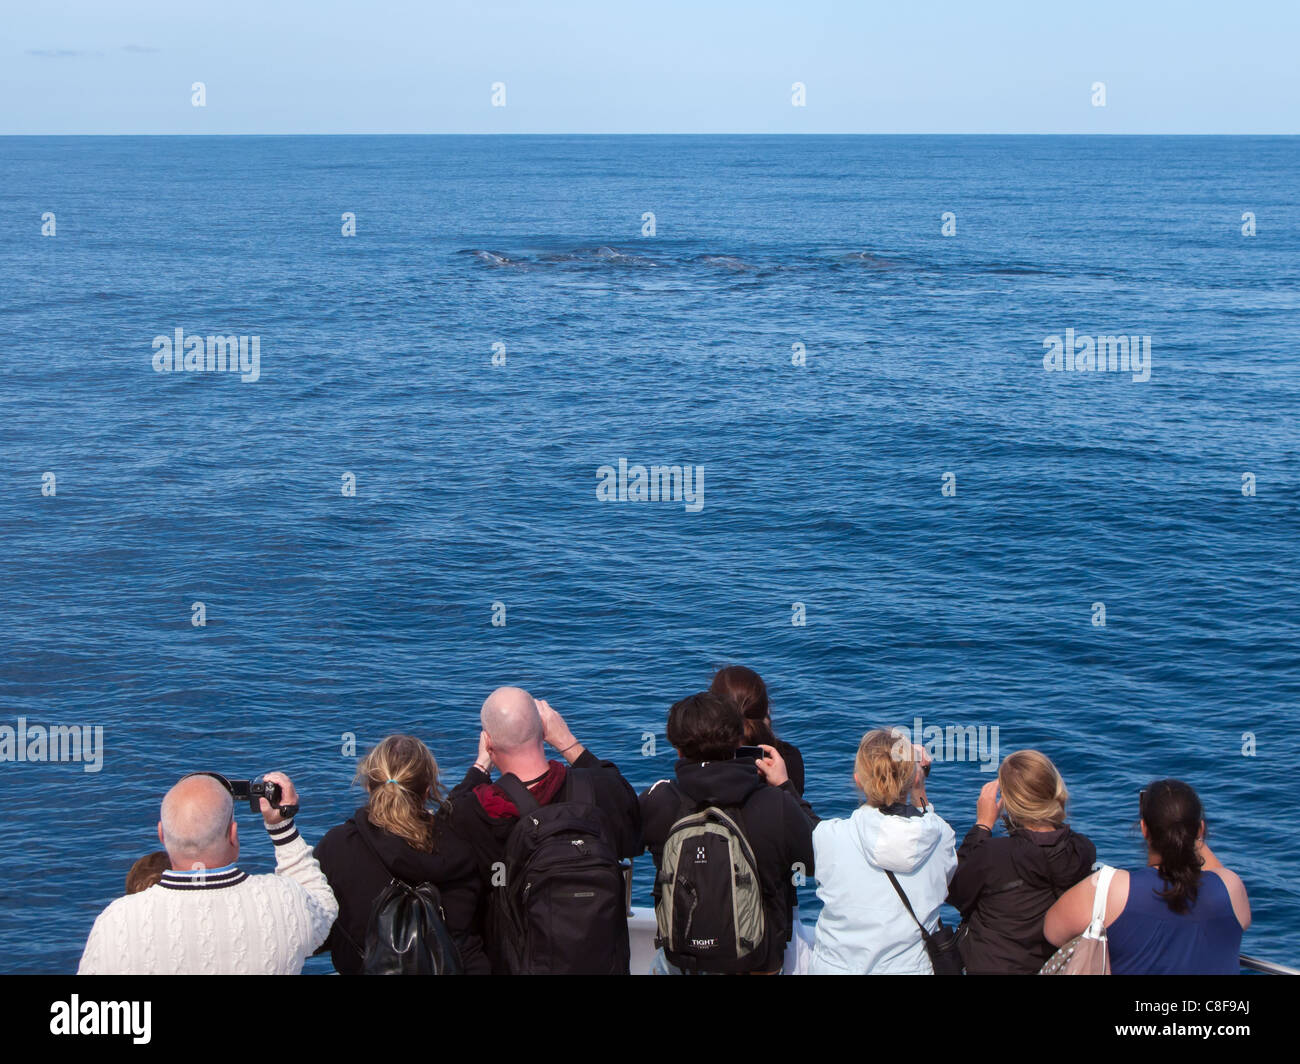 Los turistas de avistamiento de ballenas avistamiento de cachalotes en el océano atlántico, fuera de la isla de São Miguel, en las Azores. Foto de stock